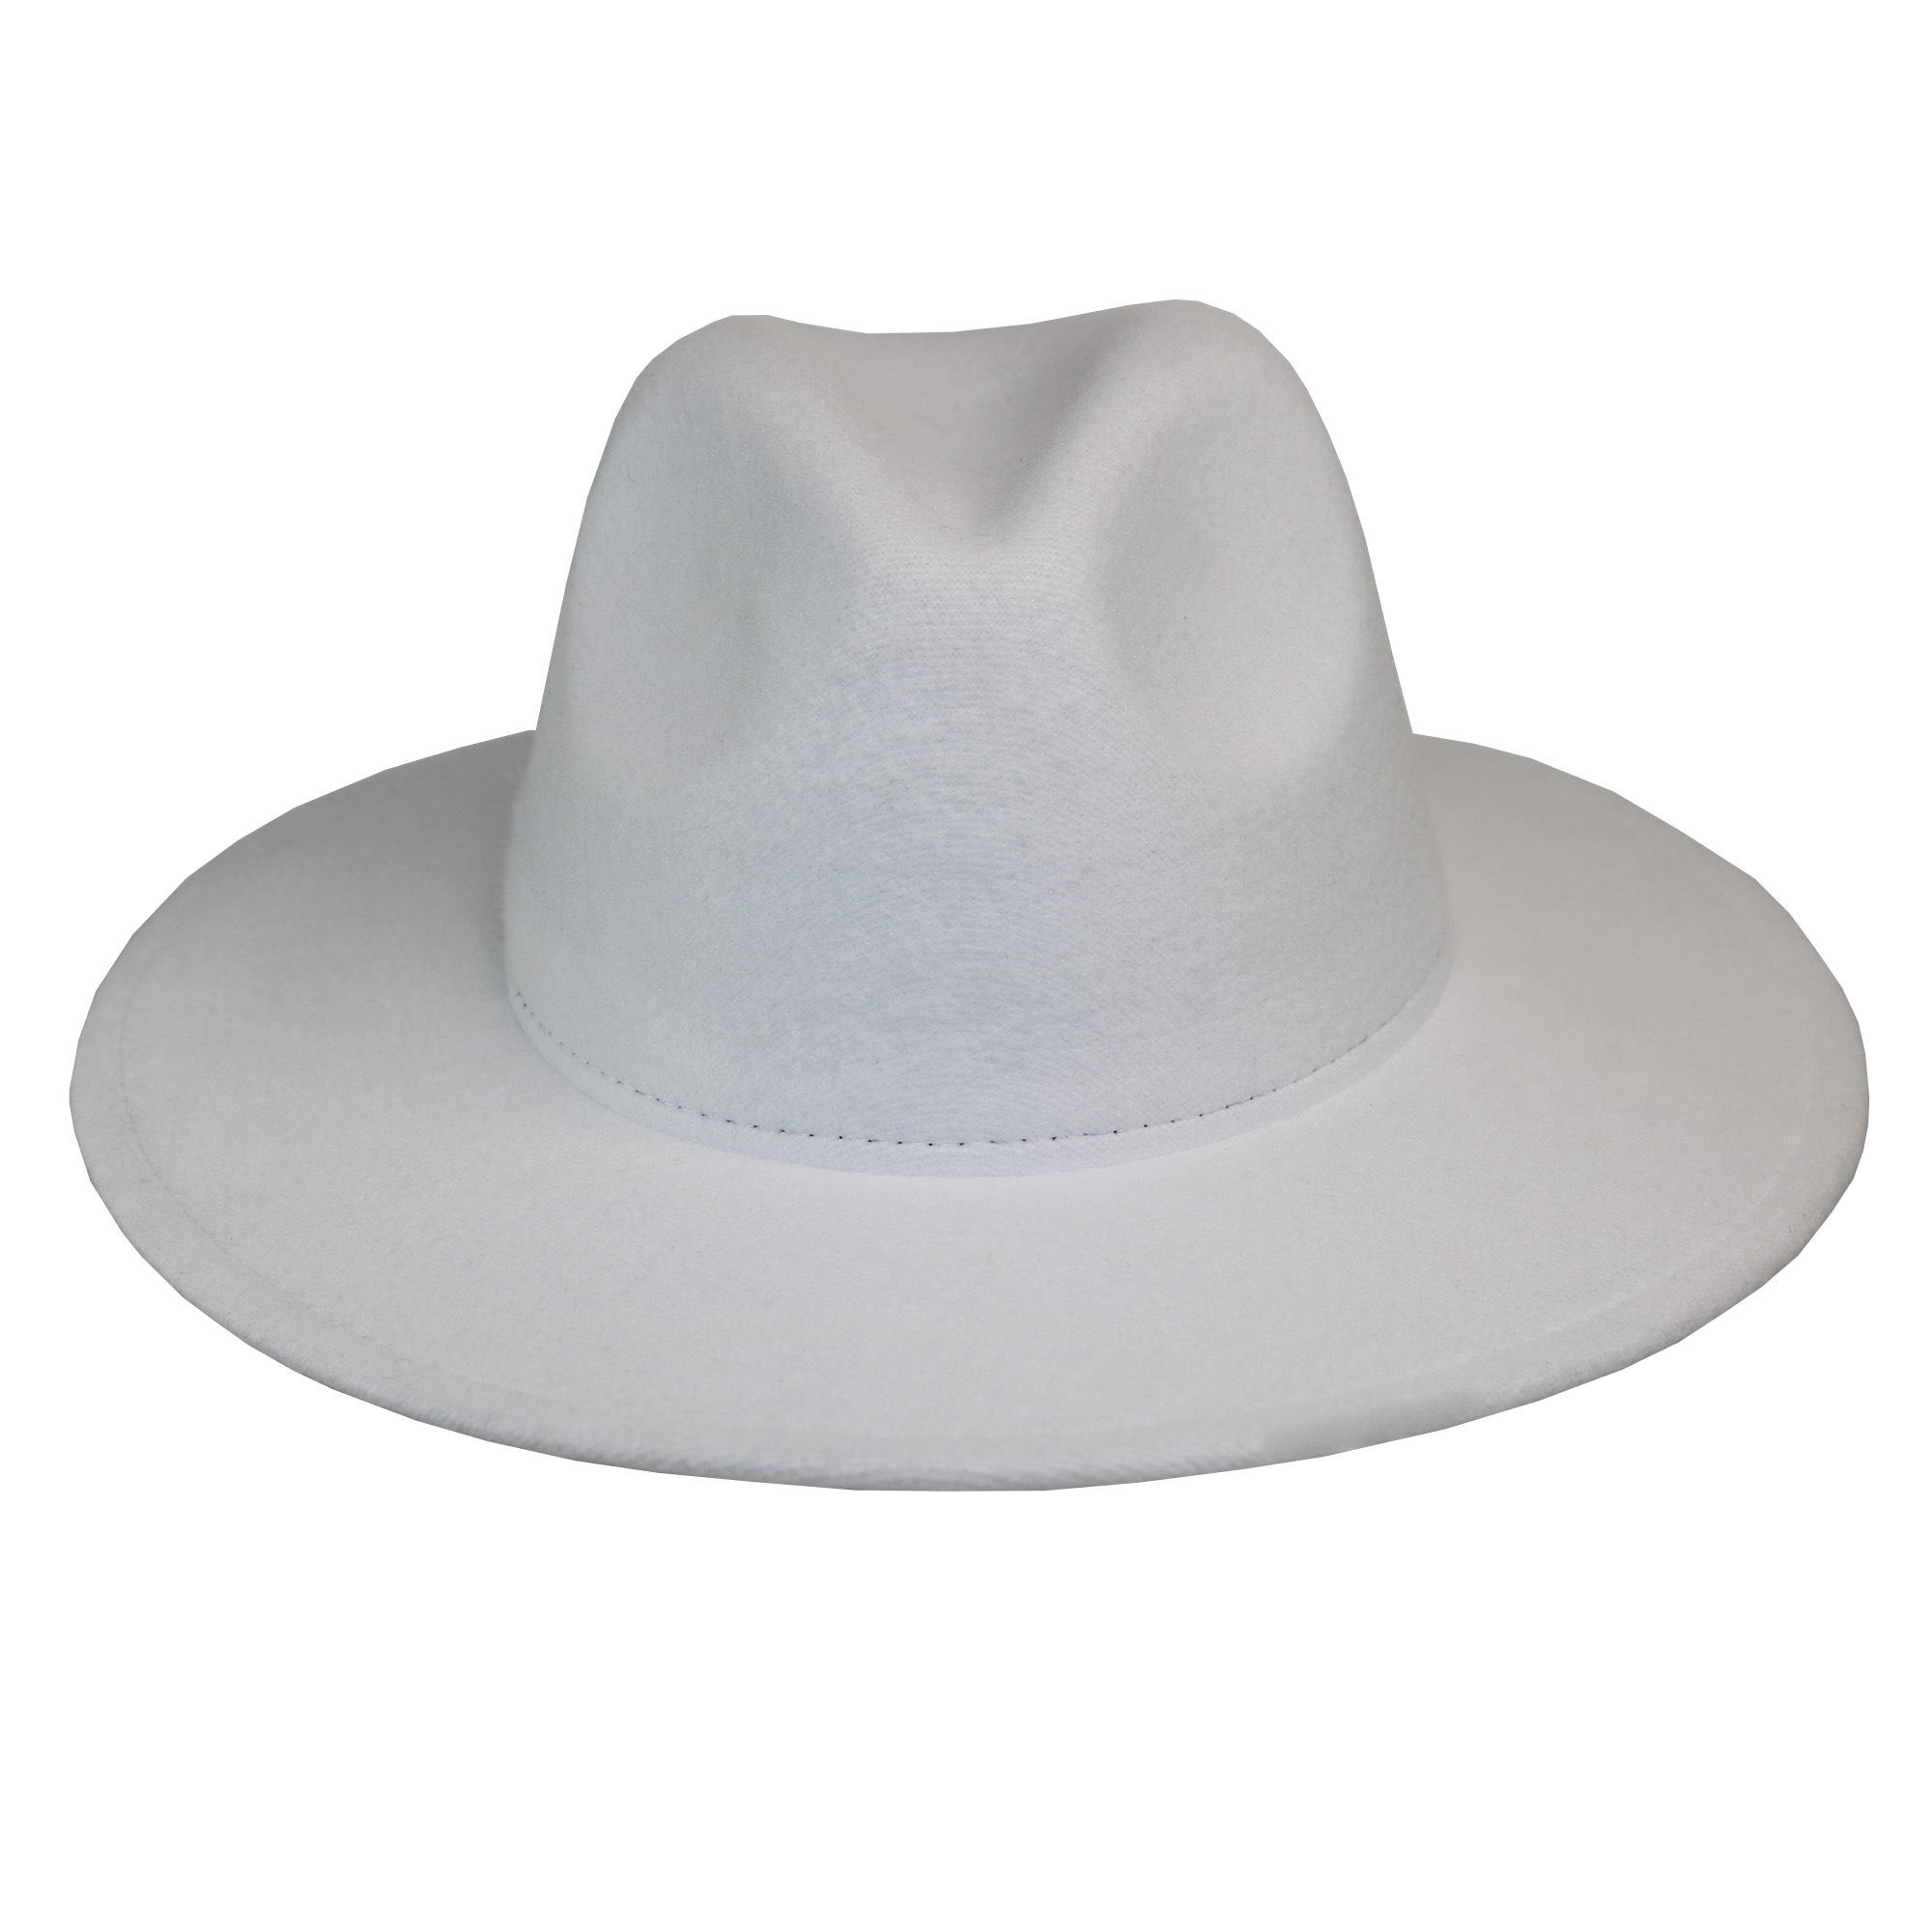 Sombrero de fieltro blanco para adulto.